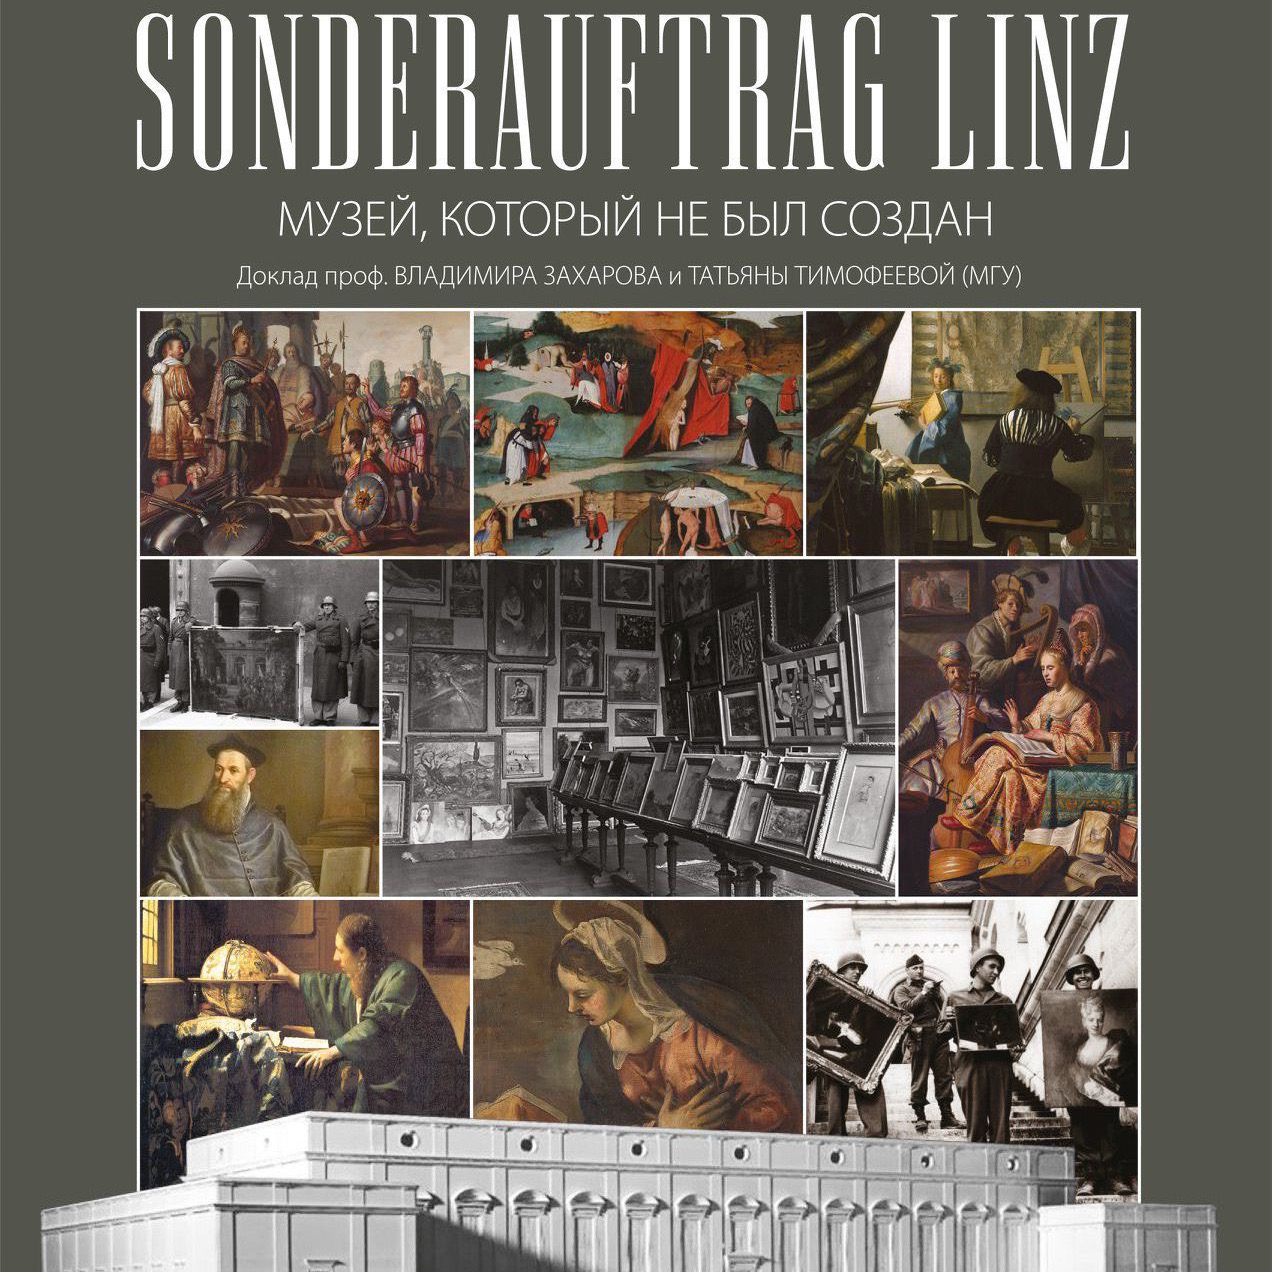 Доклад Т.Ю.Тимофеевой "Sonderauftrag Linz - музей, который не был создан"